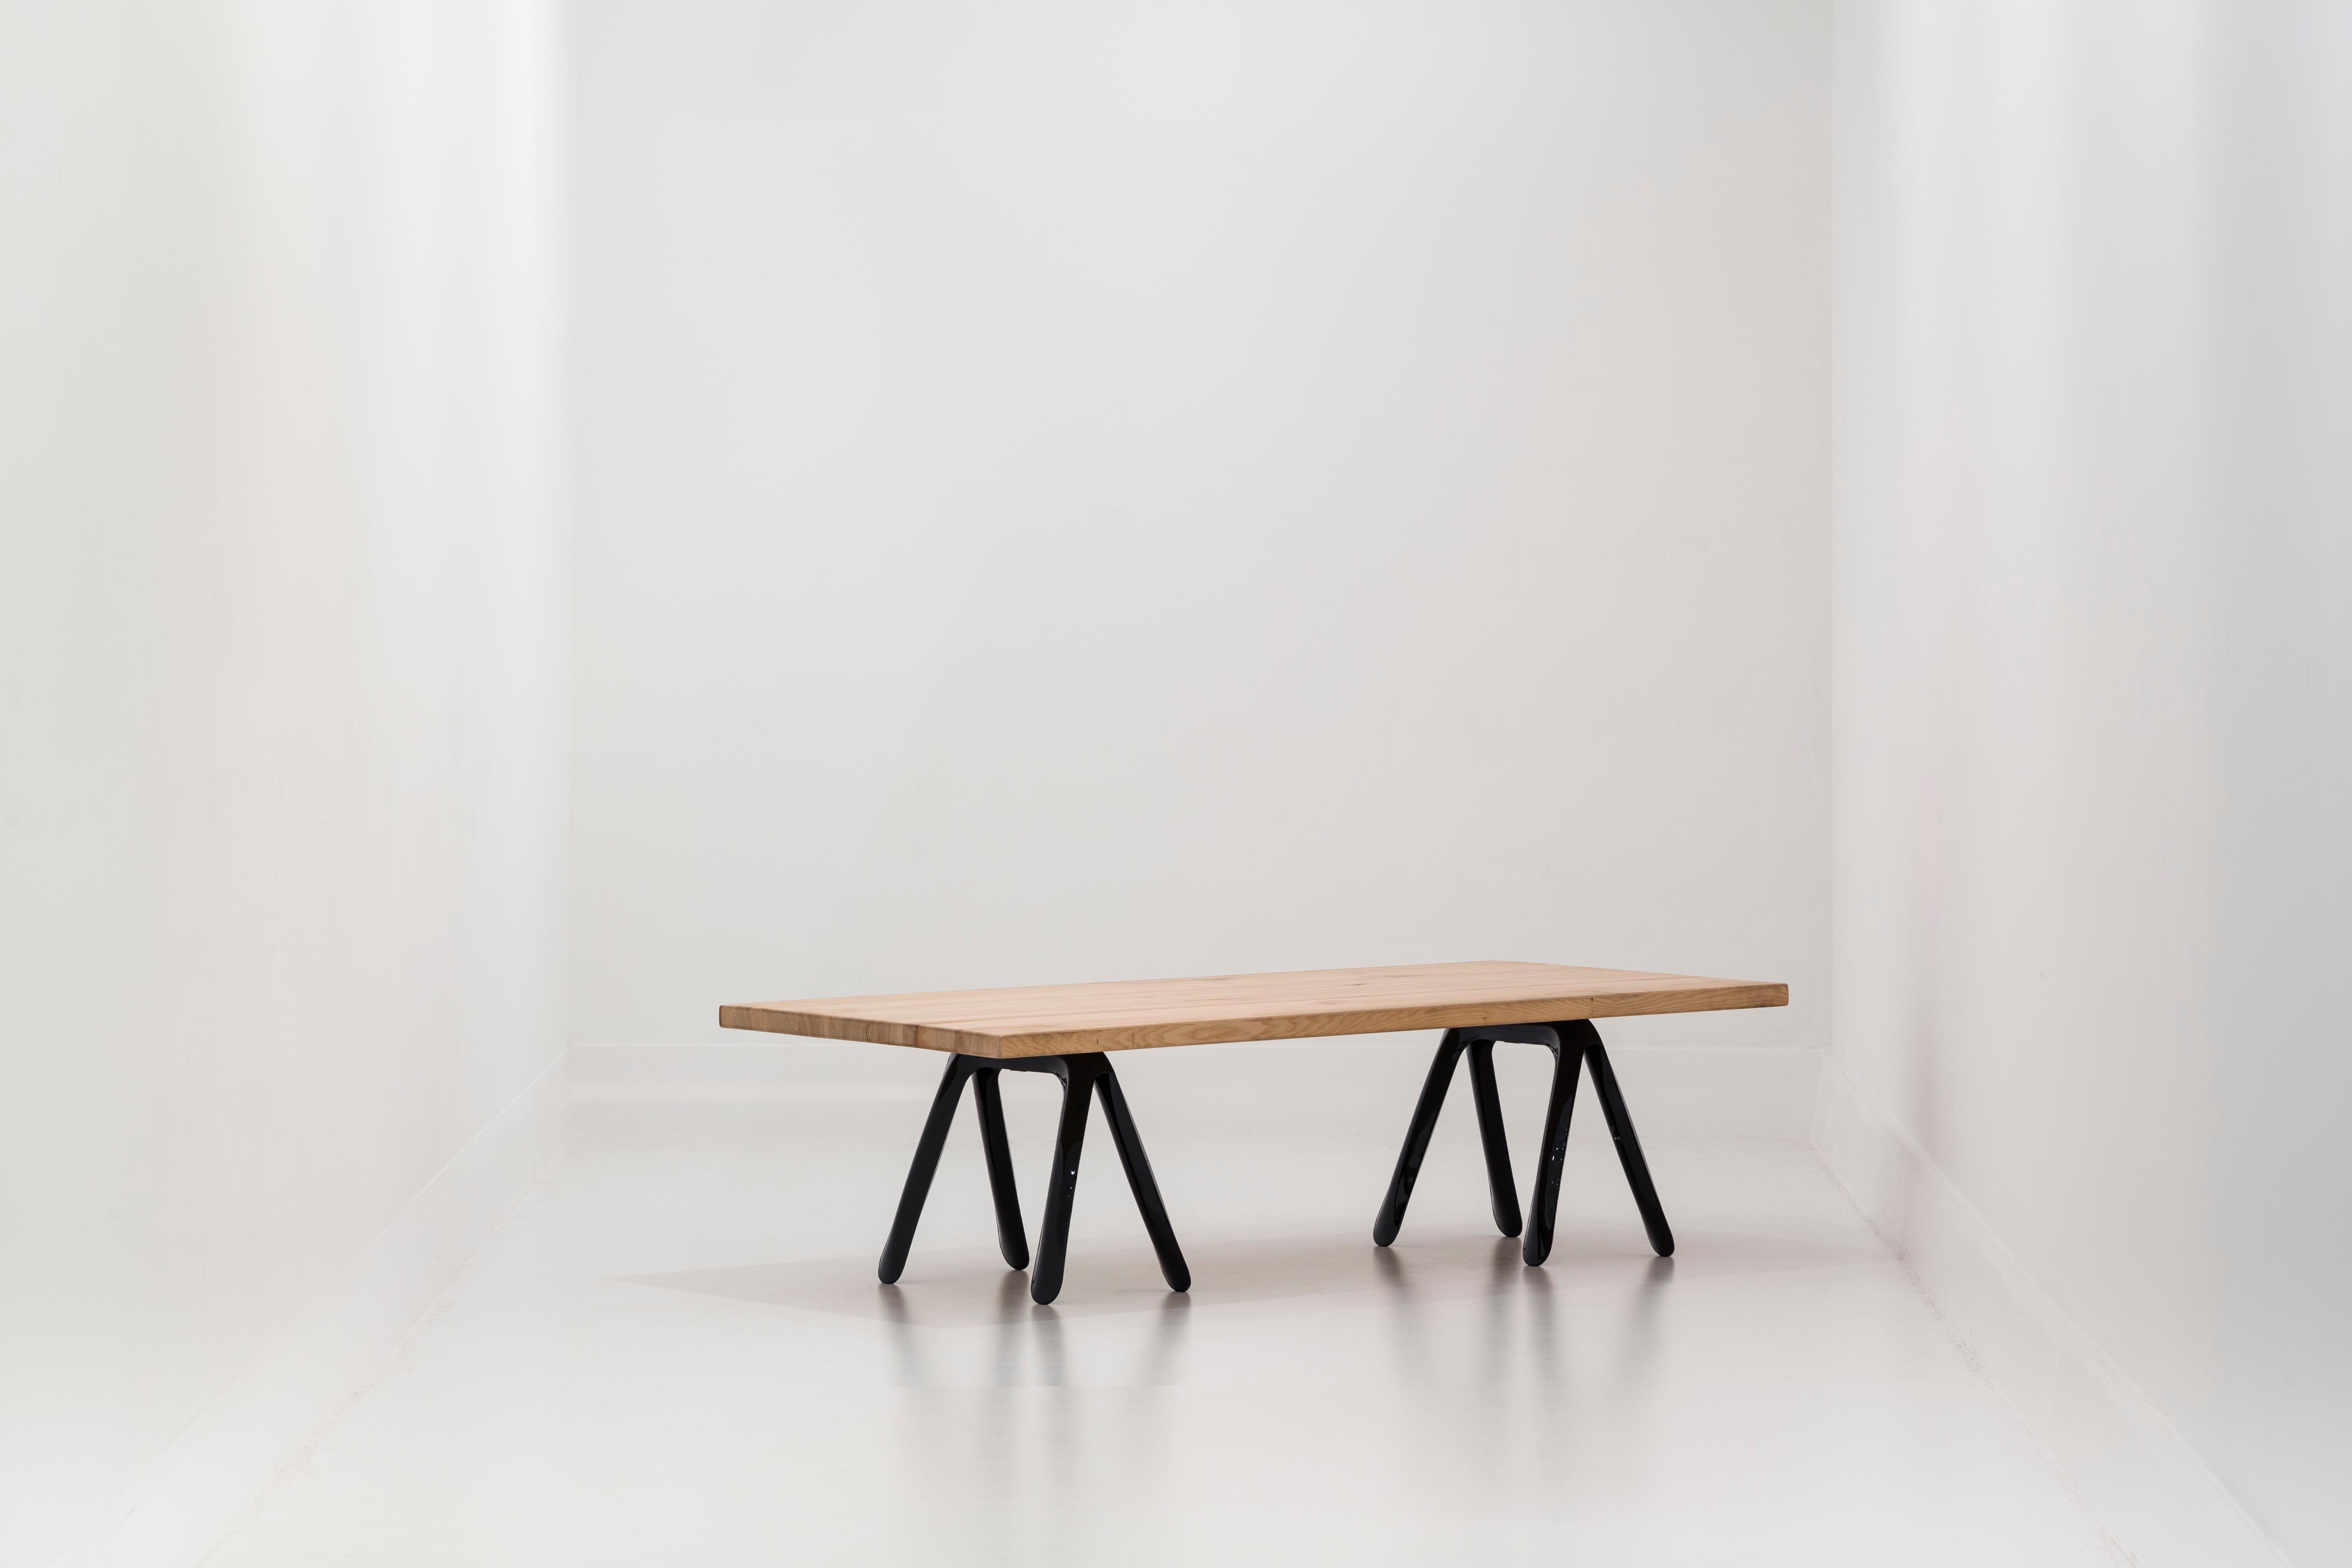 Kozka ist unser neues Mitglied der Tischstrukturen. Es ist eine Multitasking-Konstruktion. Je nach Tischplatte kann er entweder als Couchtisch oder sogar als Teil einer einzigartigen Bank verwendet werden.

Kozka ist in rostfreiem Stahl und